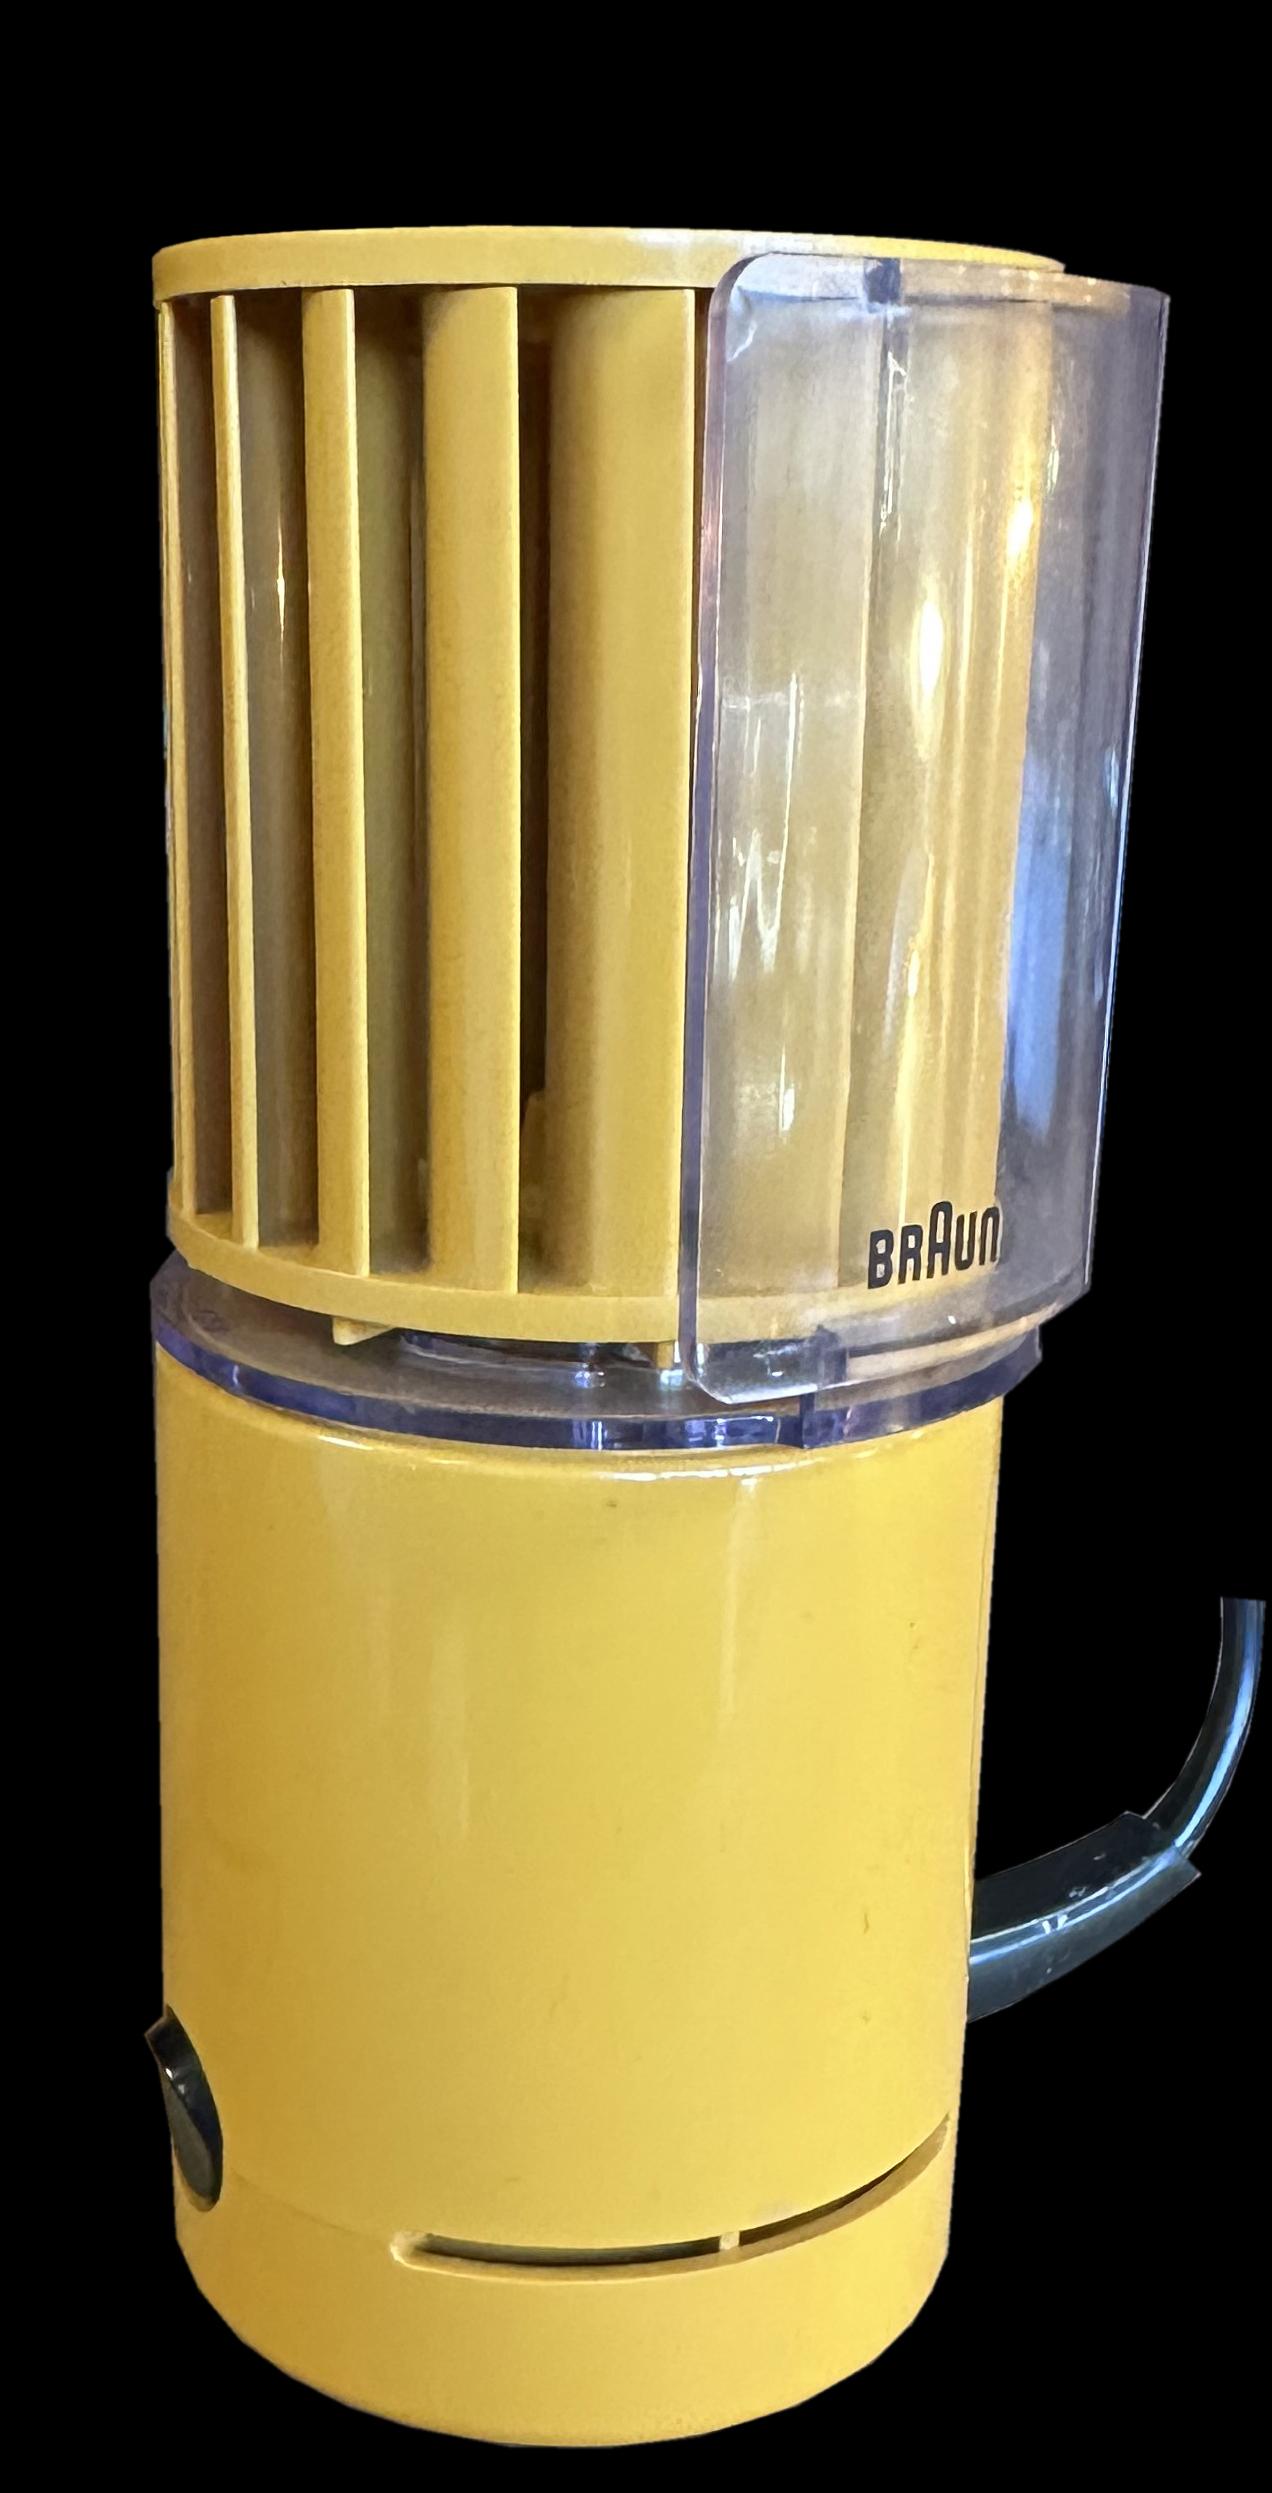 Il s'agit d'un exemplaire original, neuf et emballé, de ce ventilateur au design classique produit par le gourou du design Dieter Rams pour Braun.
Les dimensions indiquées sont sans le support acrylique.